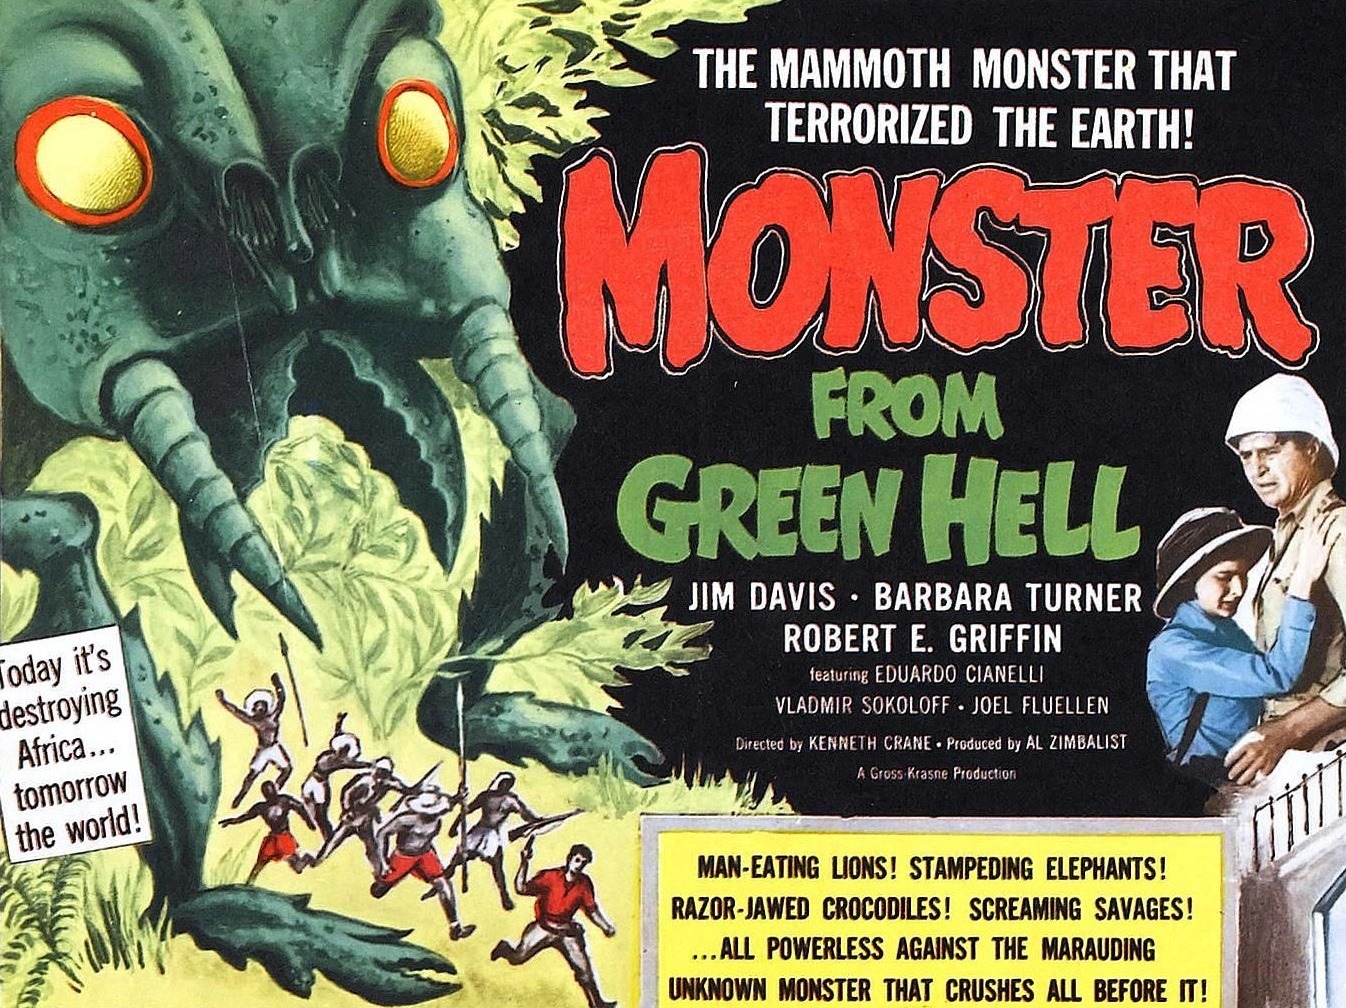 Les monstres de l'enfer vert 1957 drive in movie channel